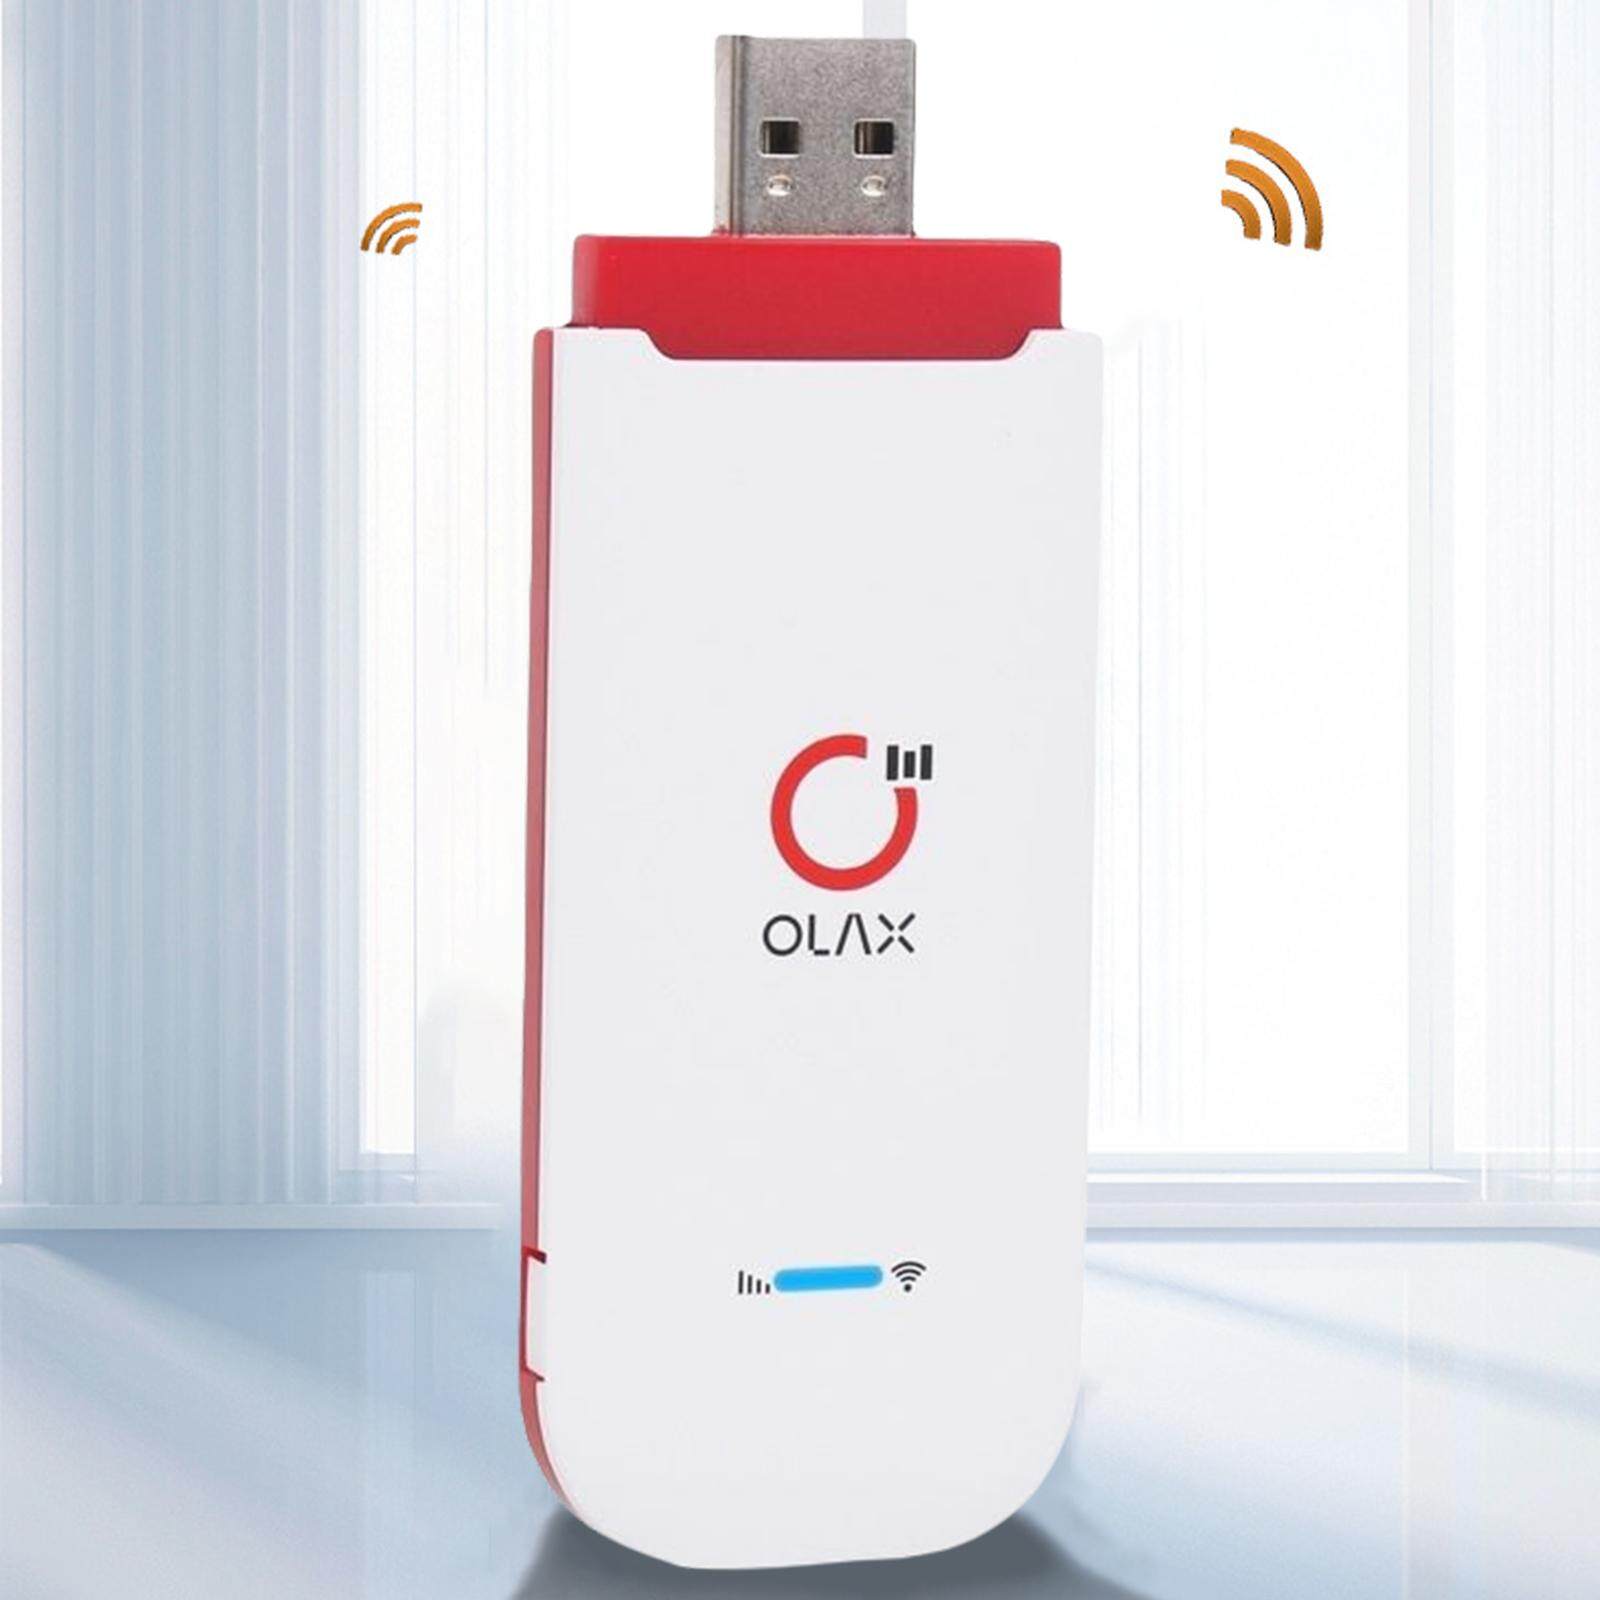 USB Phát Wifi từ sim 4G LTE Olax U90 150Mbps (hỗ trợ kết nối cùng lúc 10 thiết bị) chính hãng [BH 1 năm]